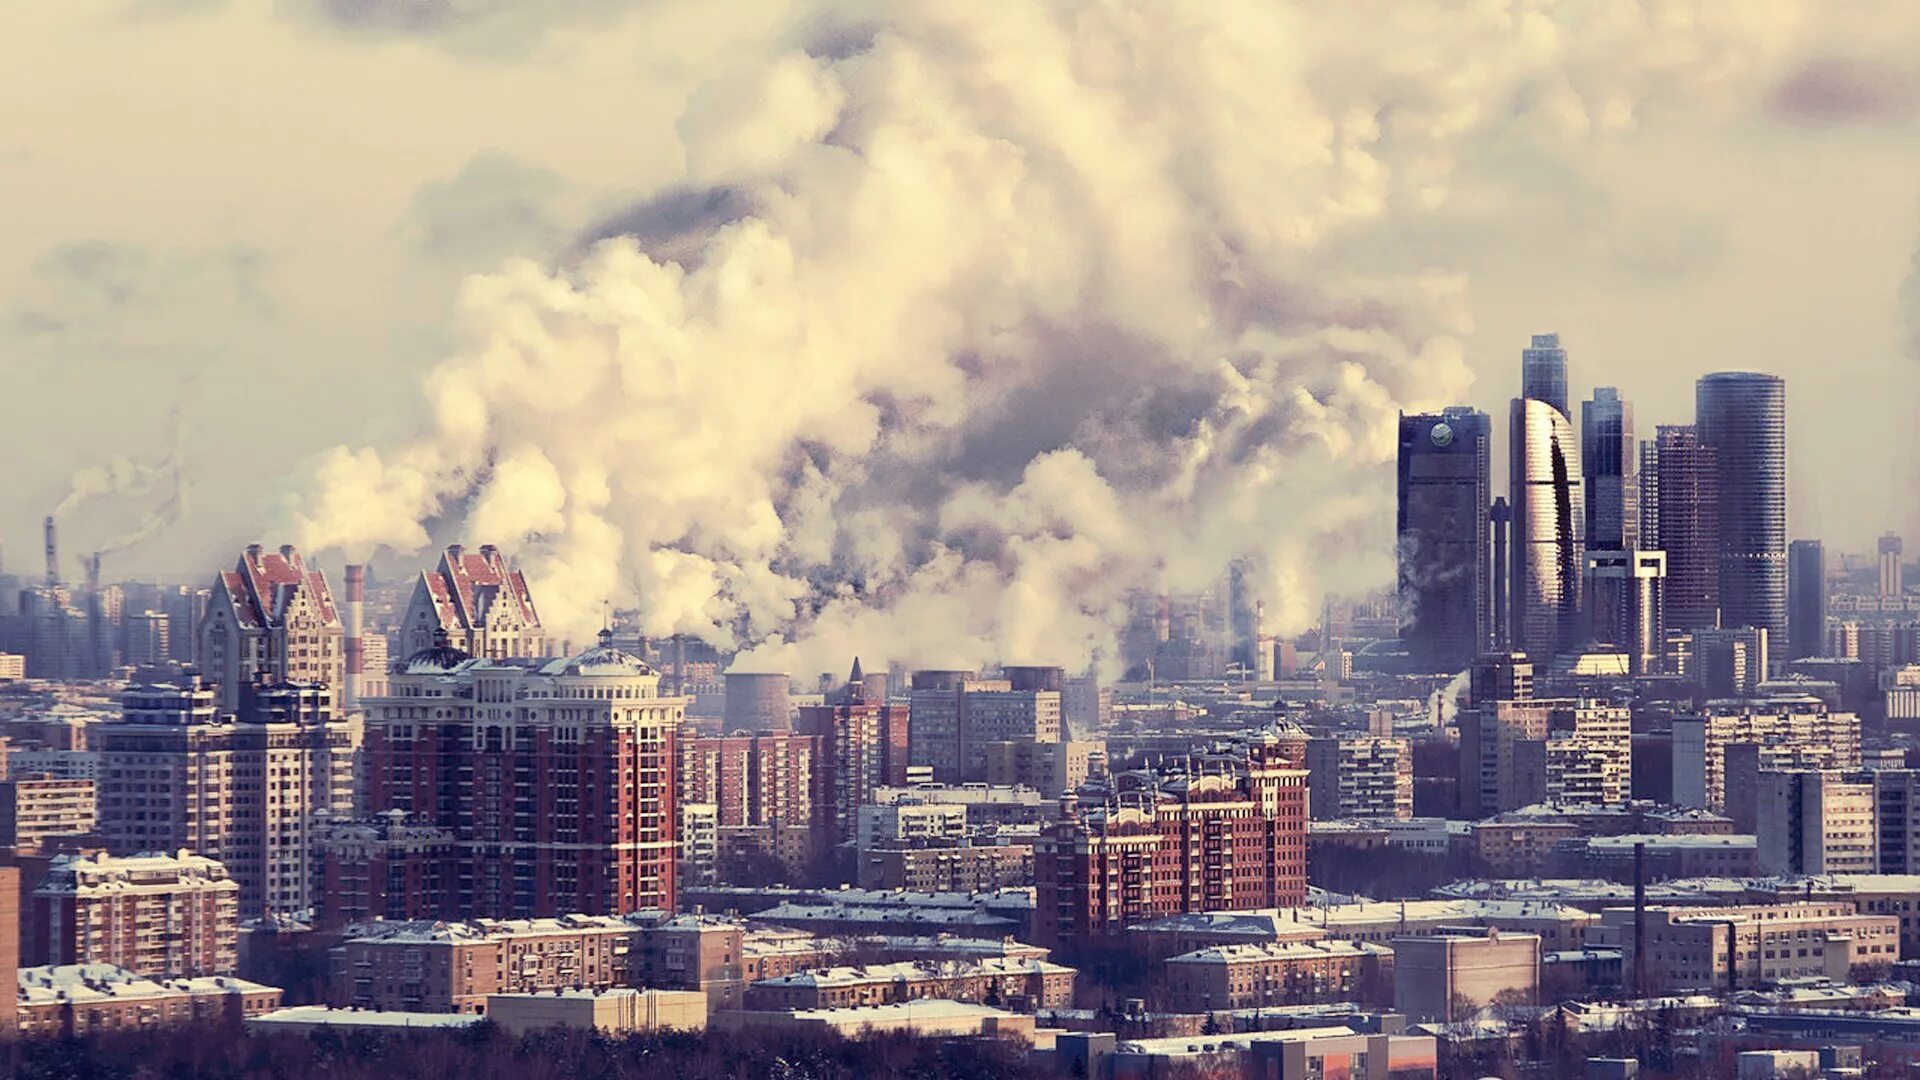 Москва Сити смог. Загрязнение воздуха в городе. Город в дыму. Загрязнение атмосферы в городах. Экология г москвы